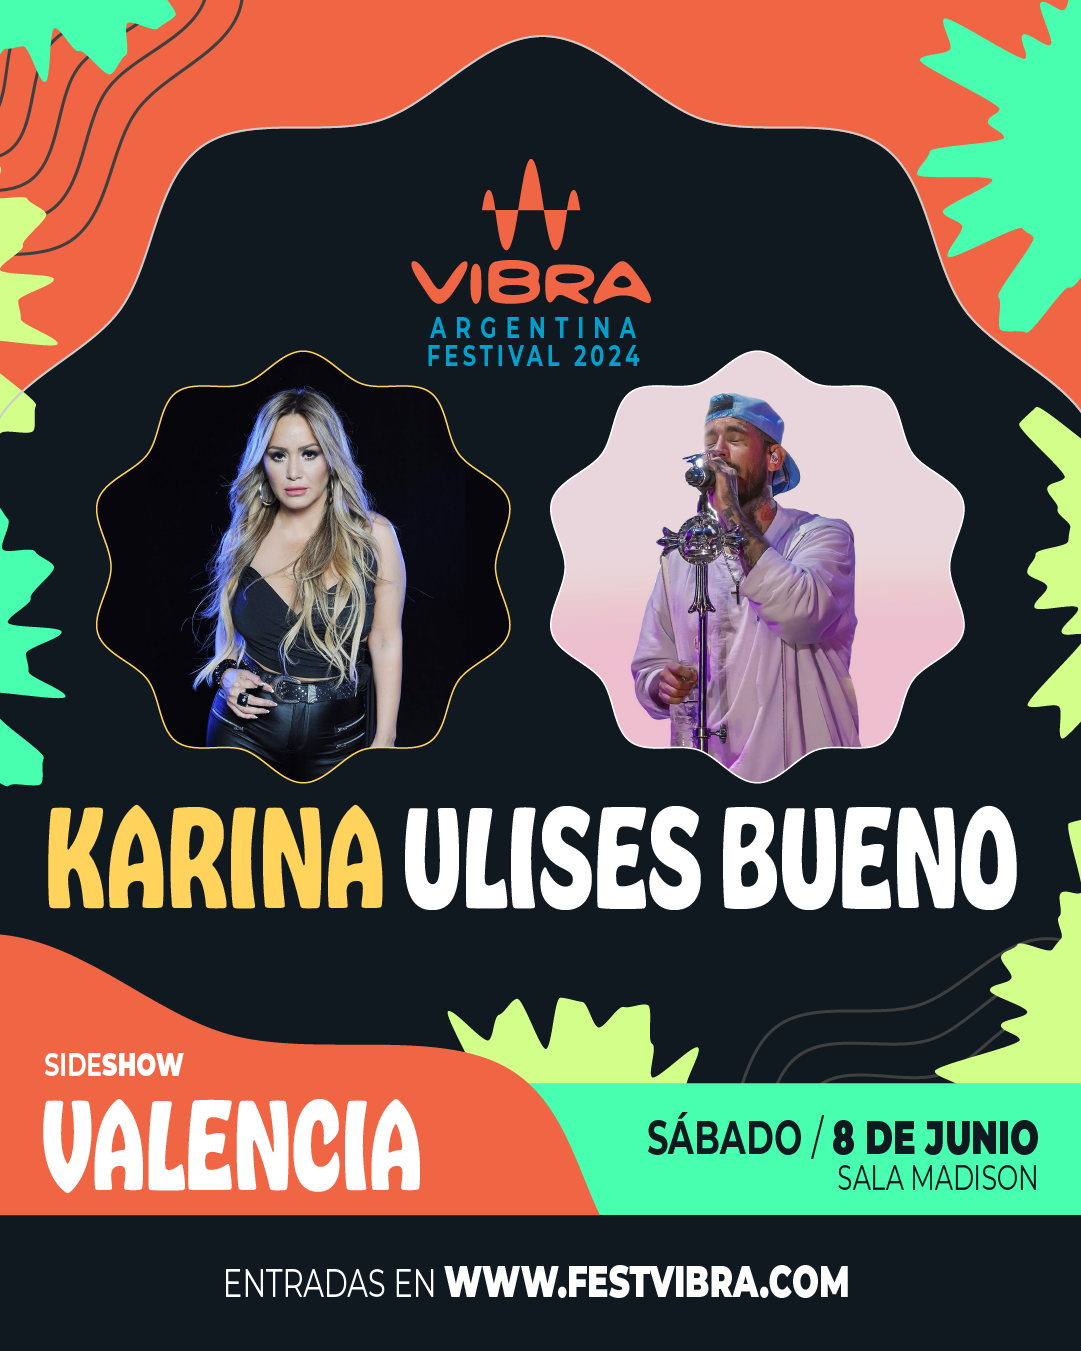 VIBRA ARGENTINA FESTIVAL 2024 en VALENCIA, sala Madison, Sabado 8 Junio Karina y Ulises Bueno. Entradas y Info: www.festvibra.com